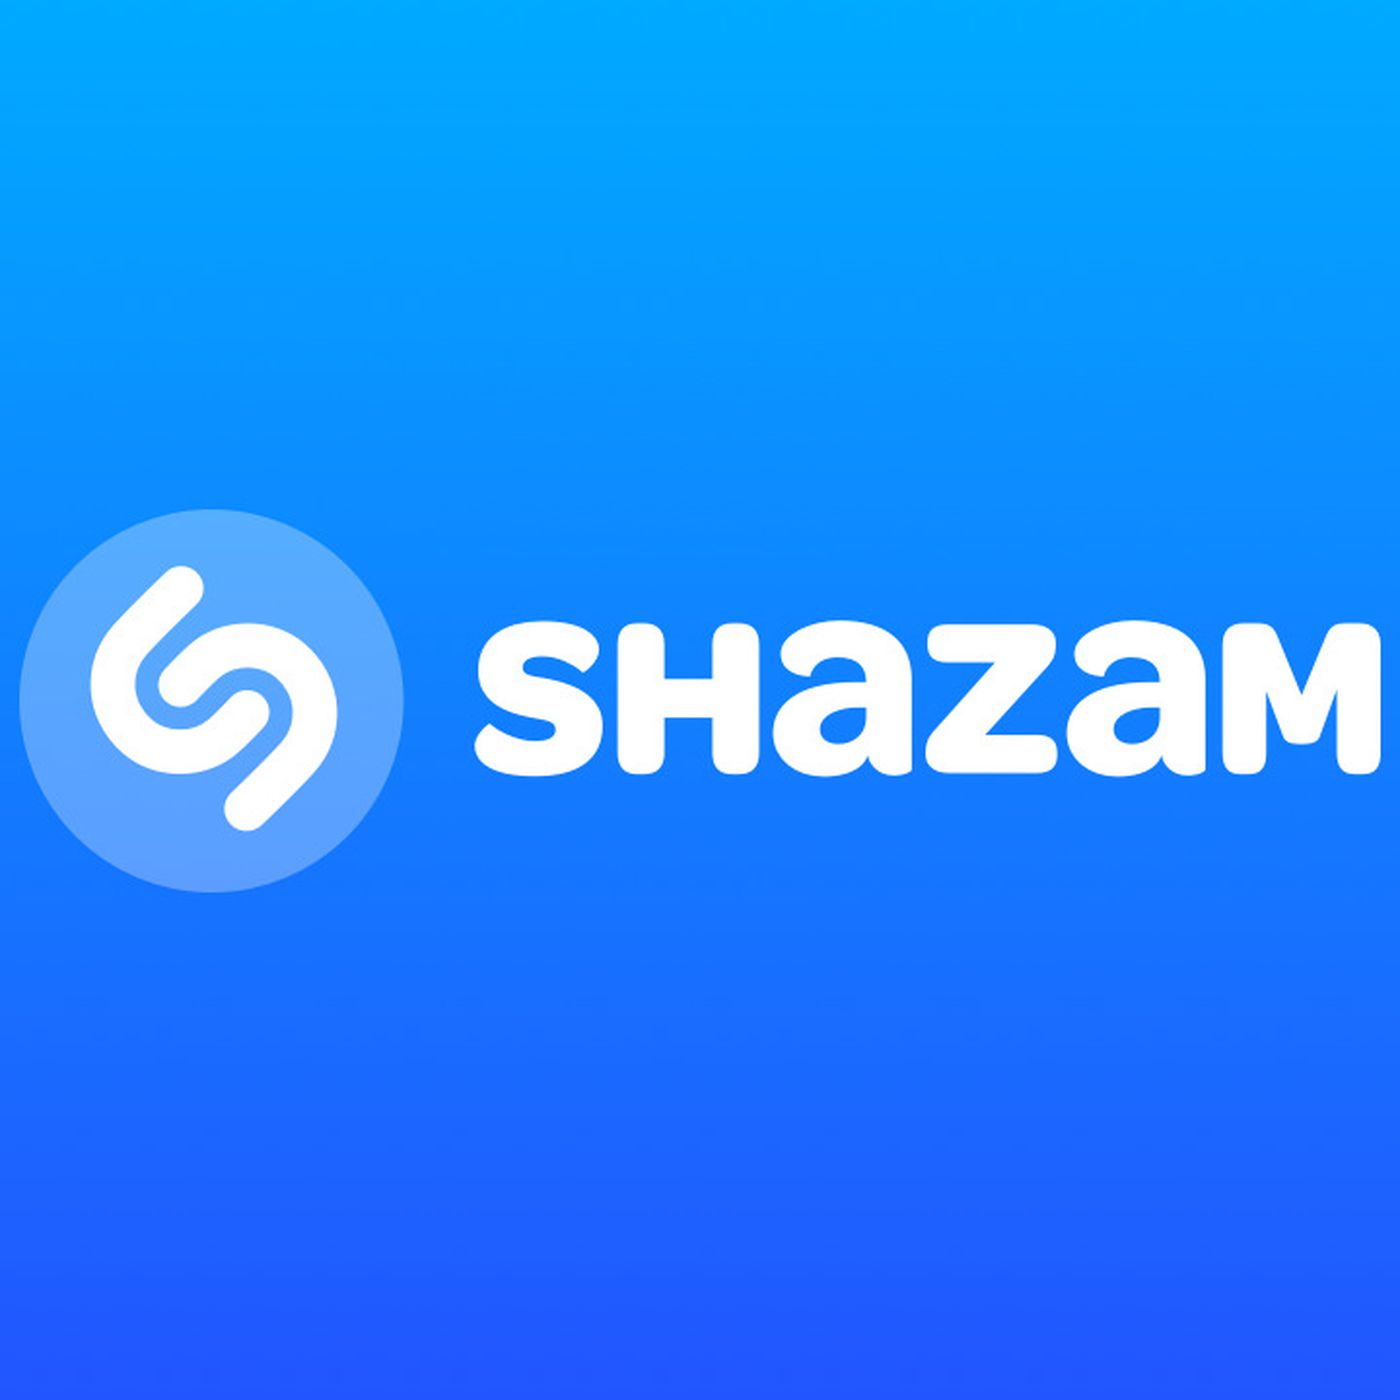 shazam-Logo.jpg